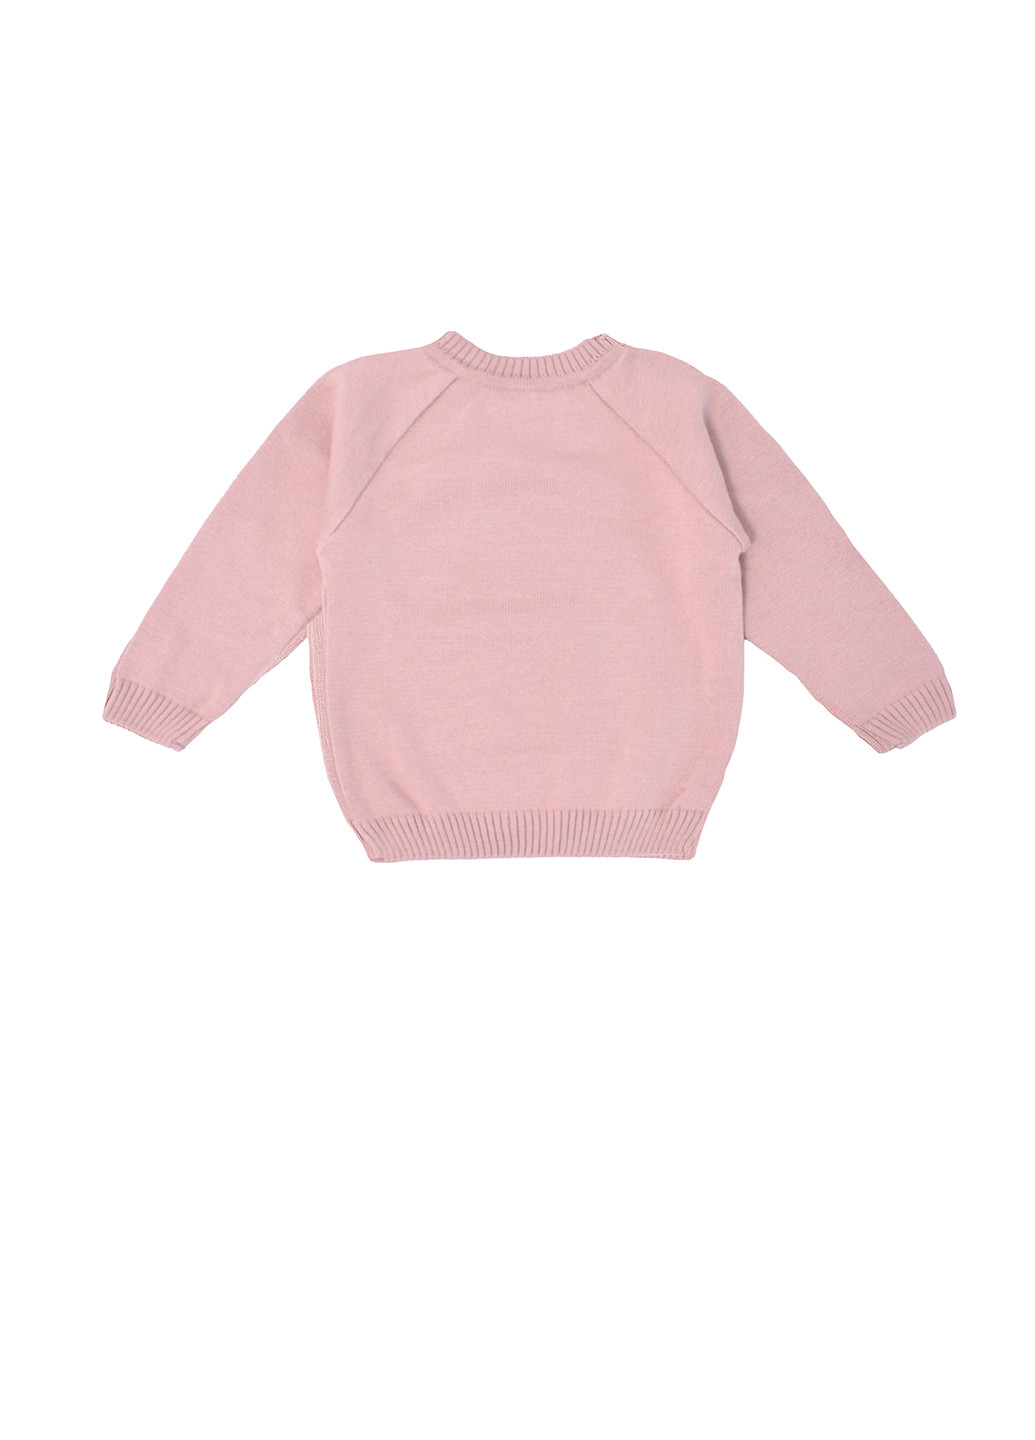 Светло-розовый демисезонный джемпер джемпер Mari-Knit